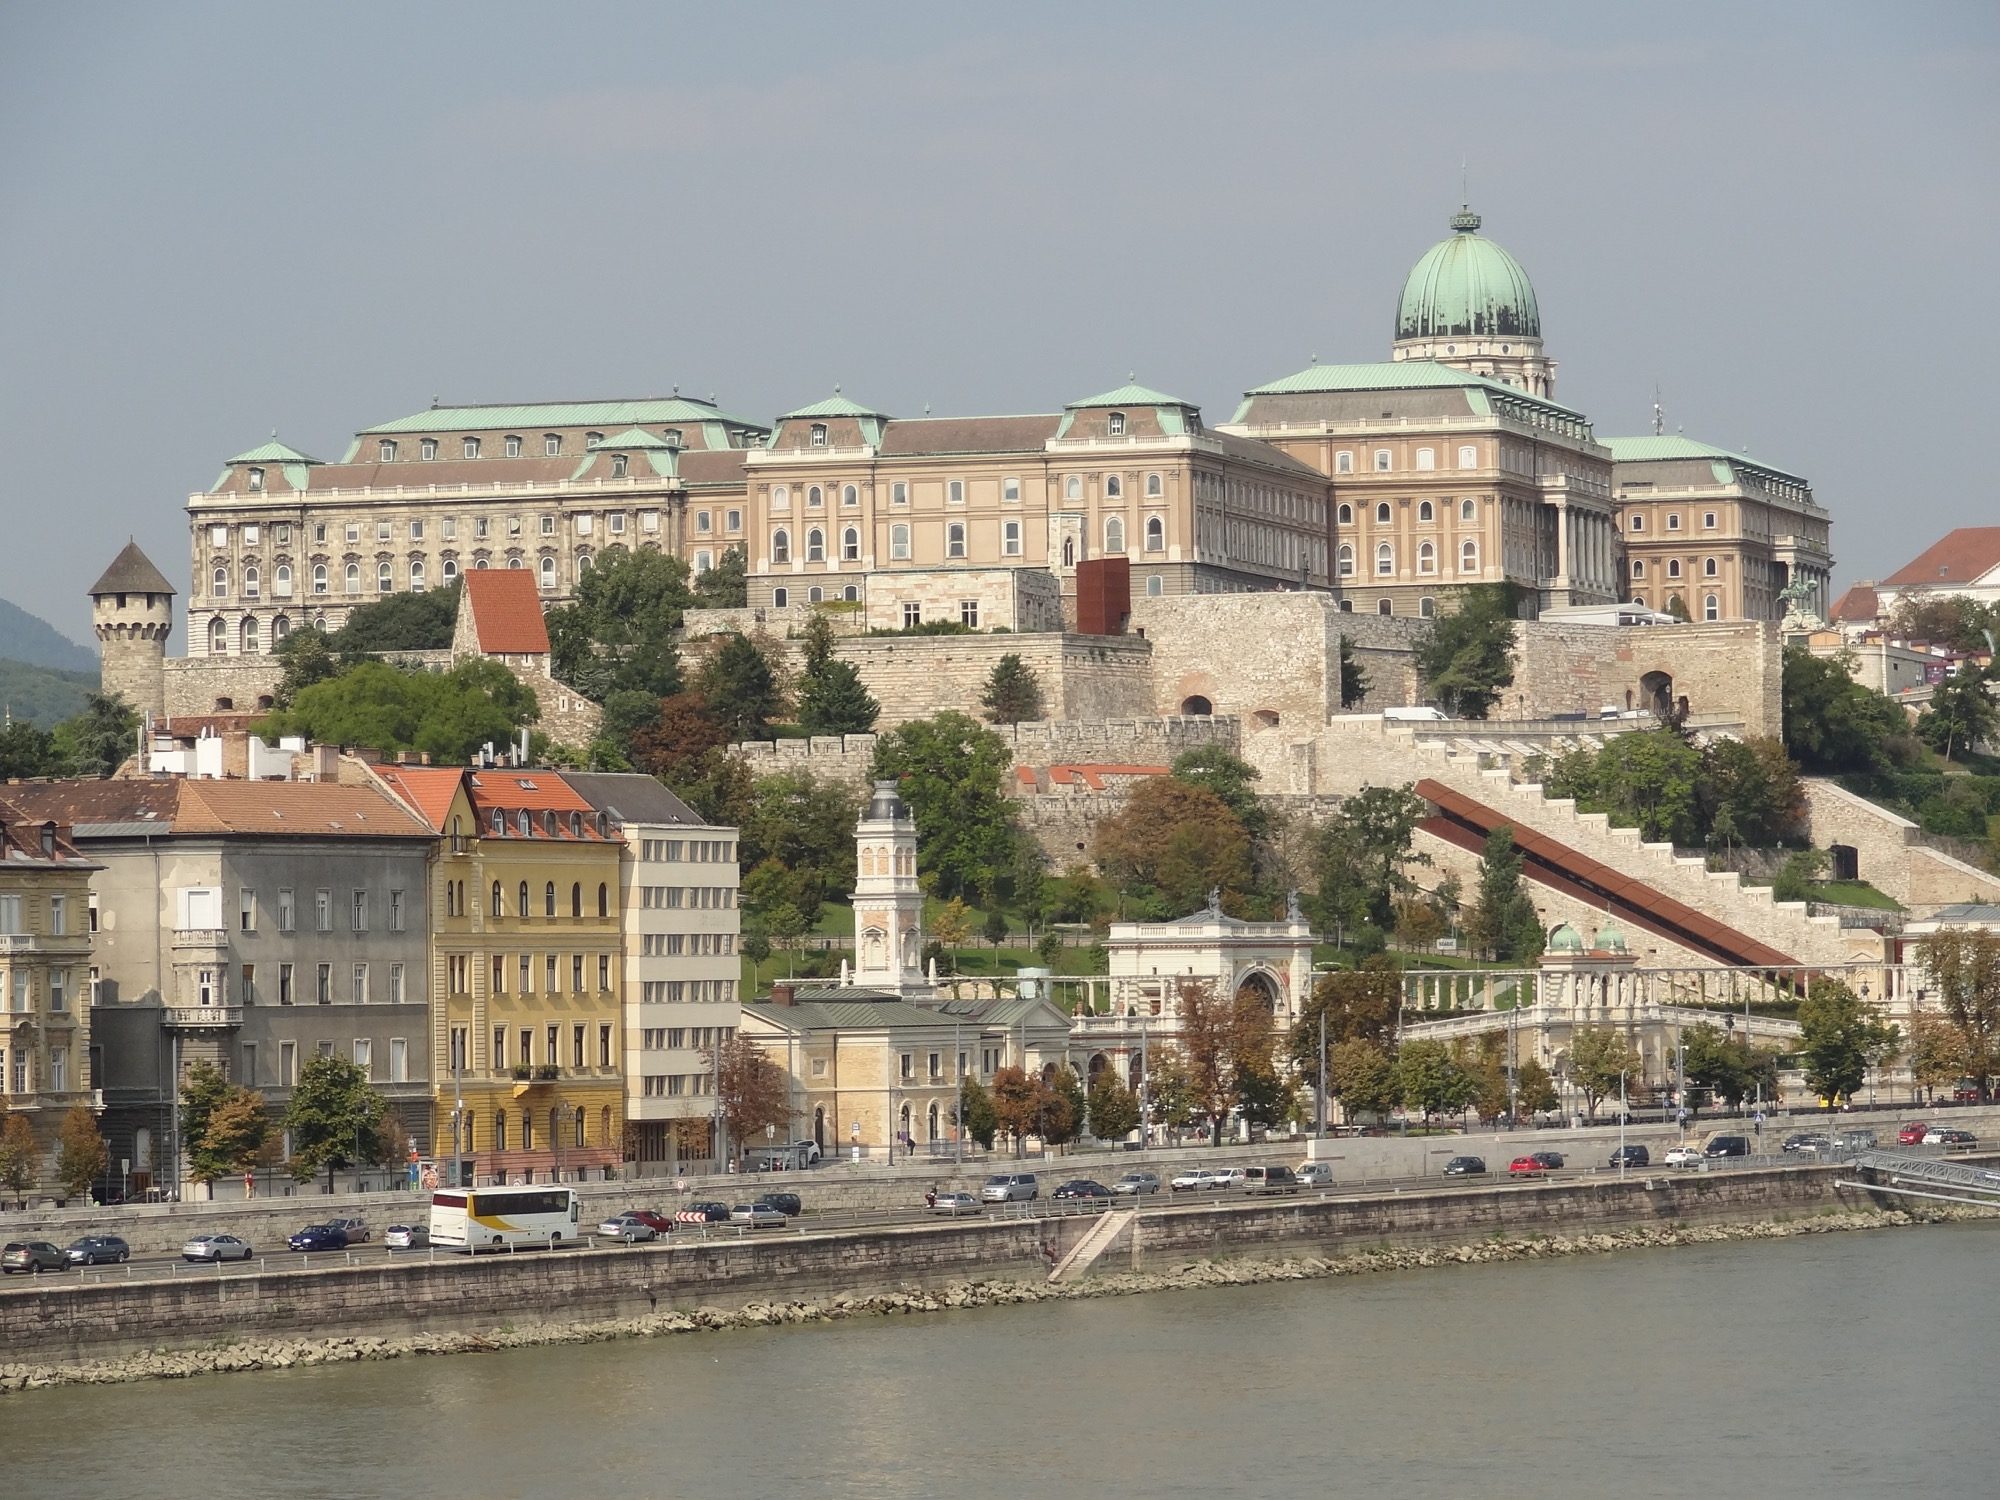 Budapest Royal Palace At Buda Castle